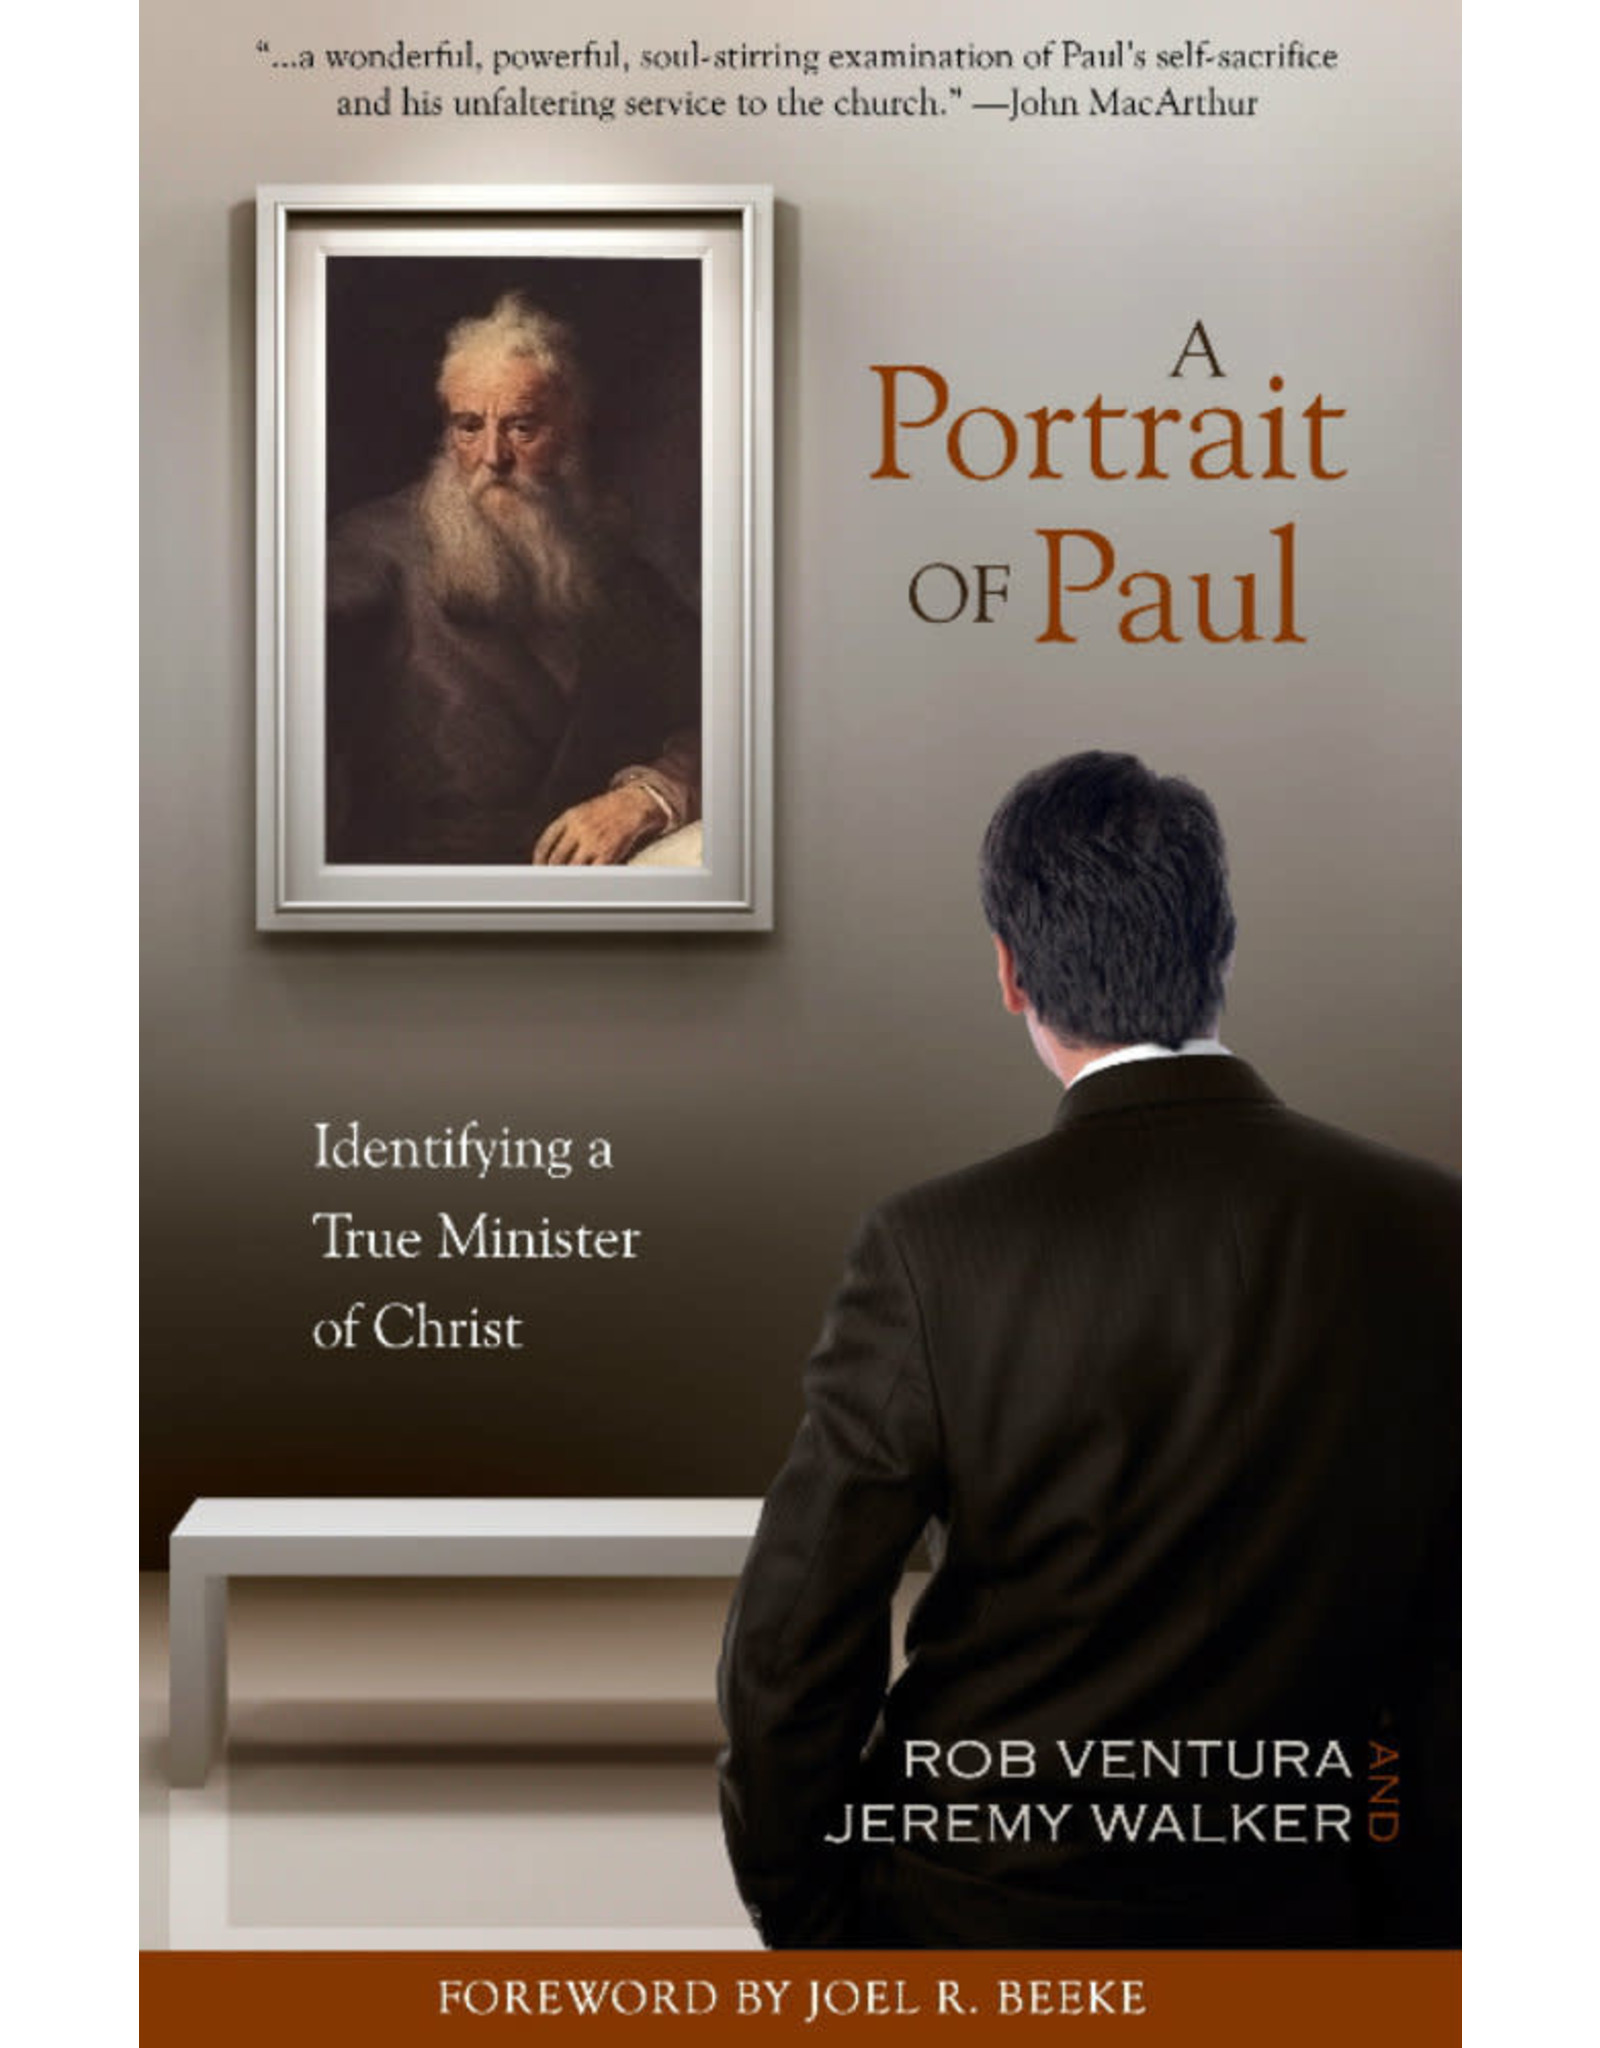 Rob & Walker, Jeremy Ventura A Portrait of Paul